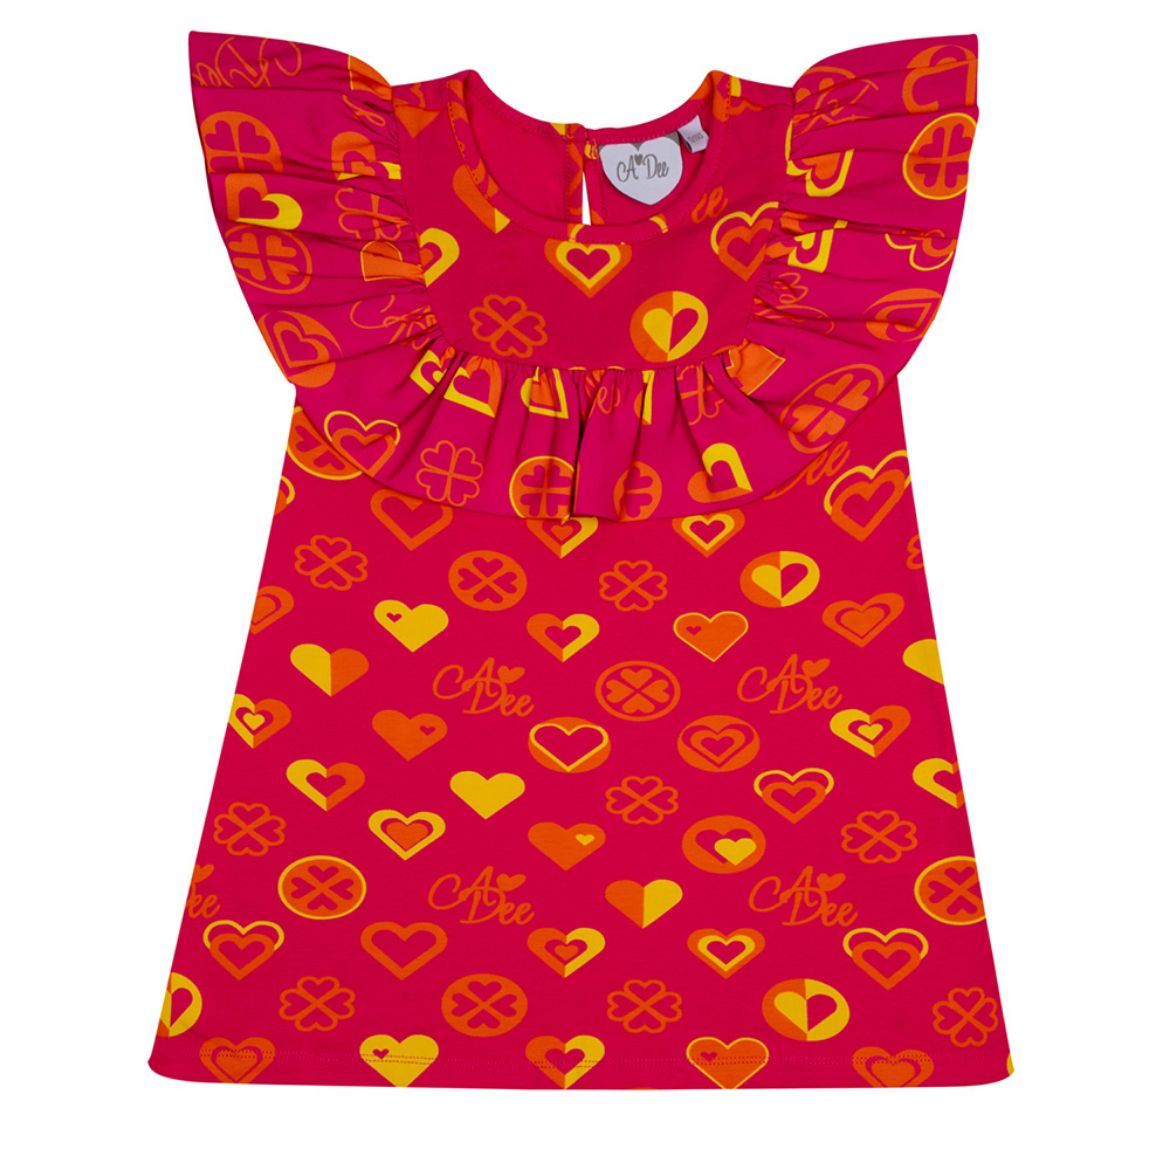 Picture of A Dee Marissa Heart Print Jersey Dress